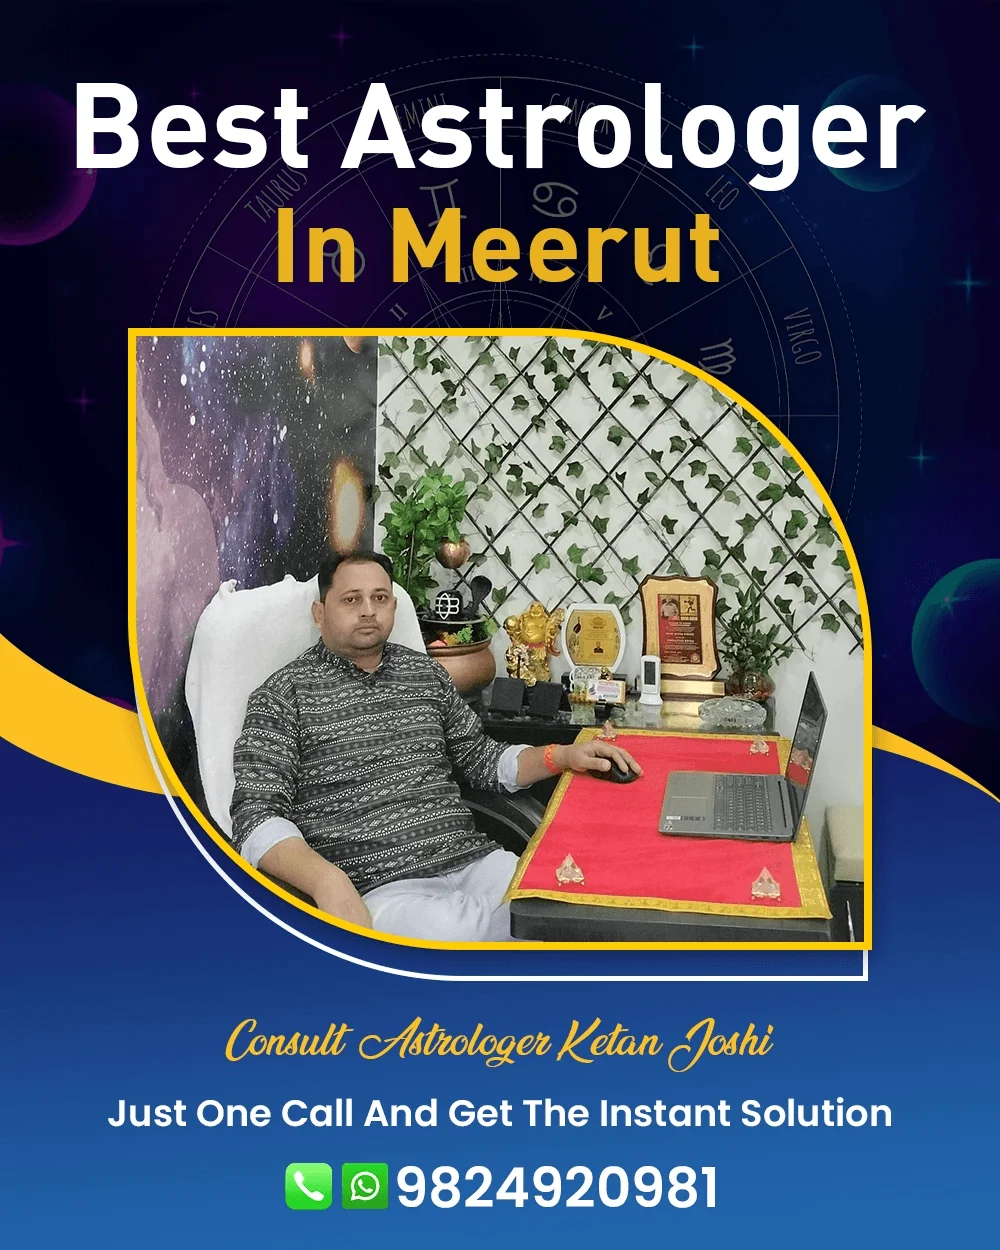 Best Astrologer In Meerut